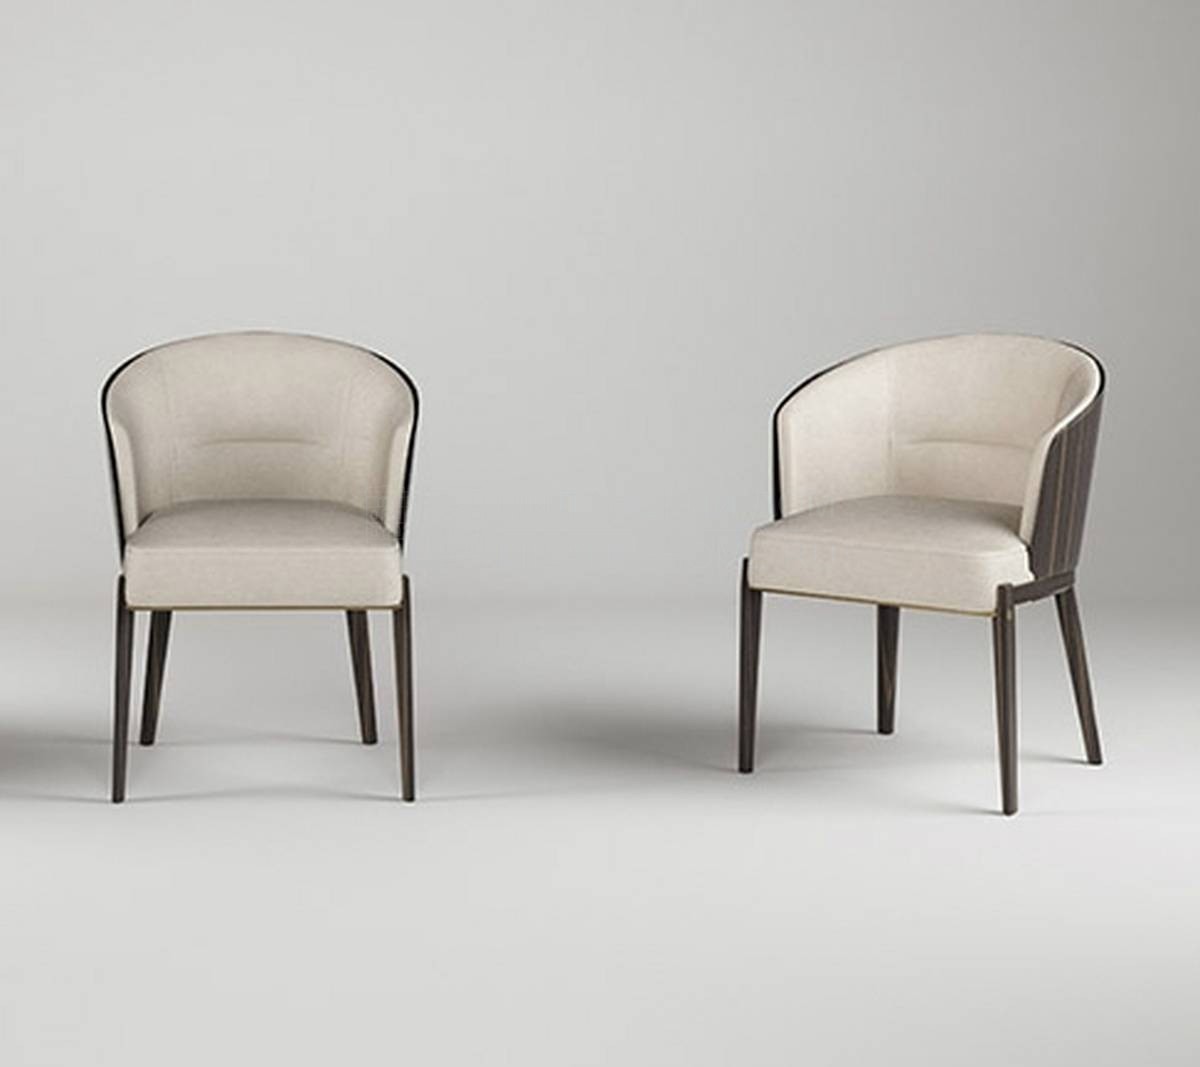 Полукресло №5 Low chair из Италии фабрики PAOLO CASTELLI